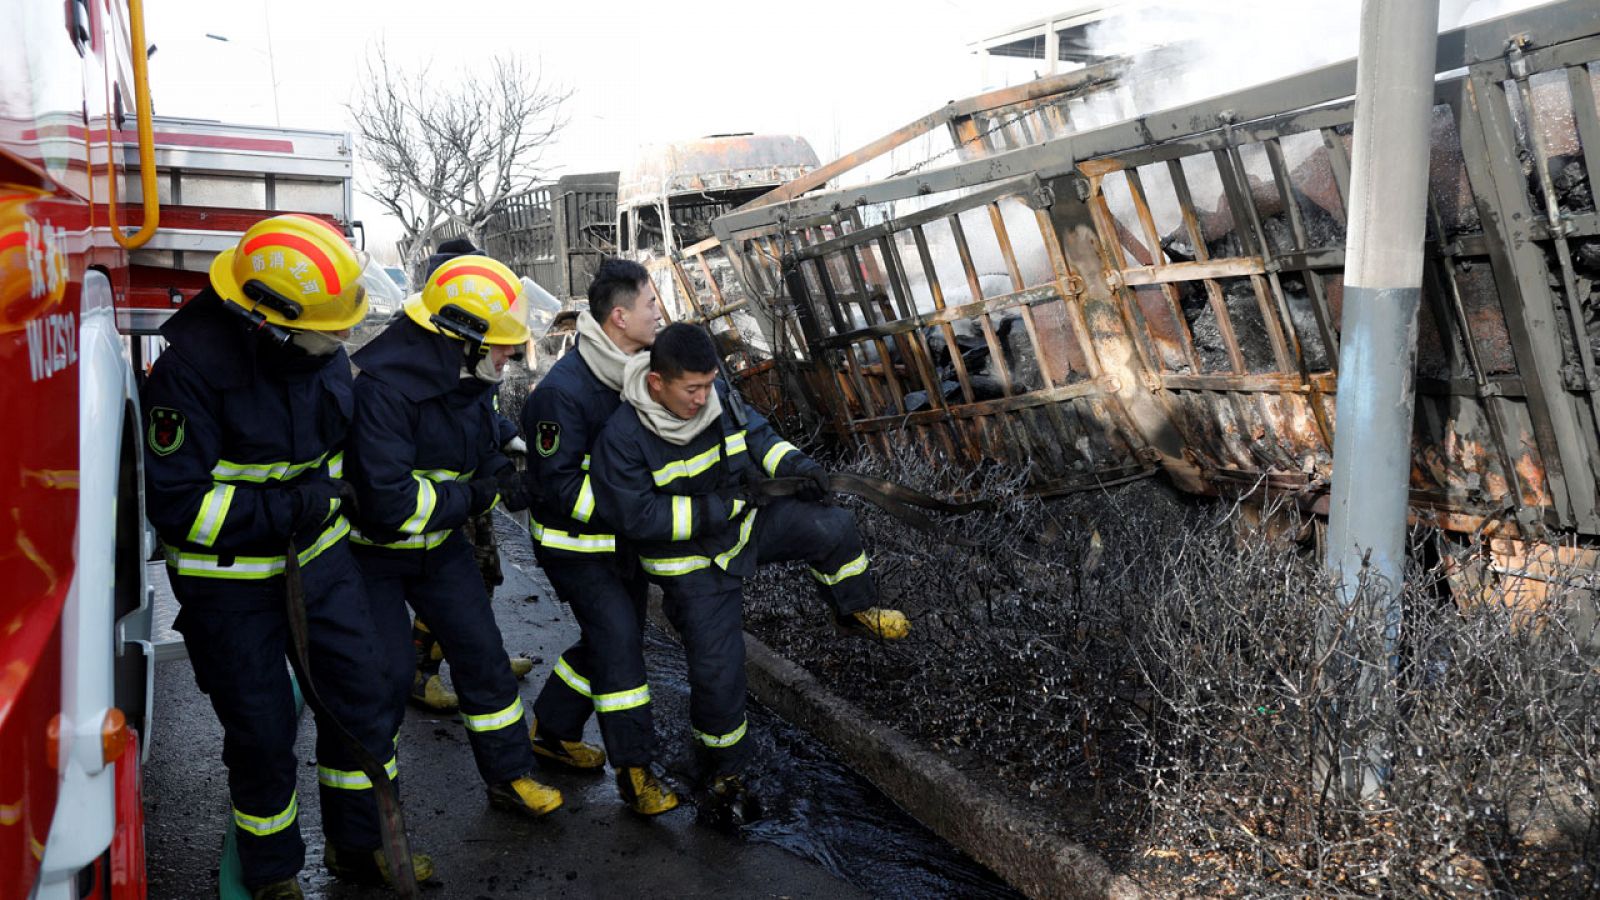 Al menos 22 muertos en una explosión junto a una planta química en China